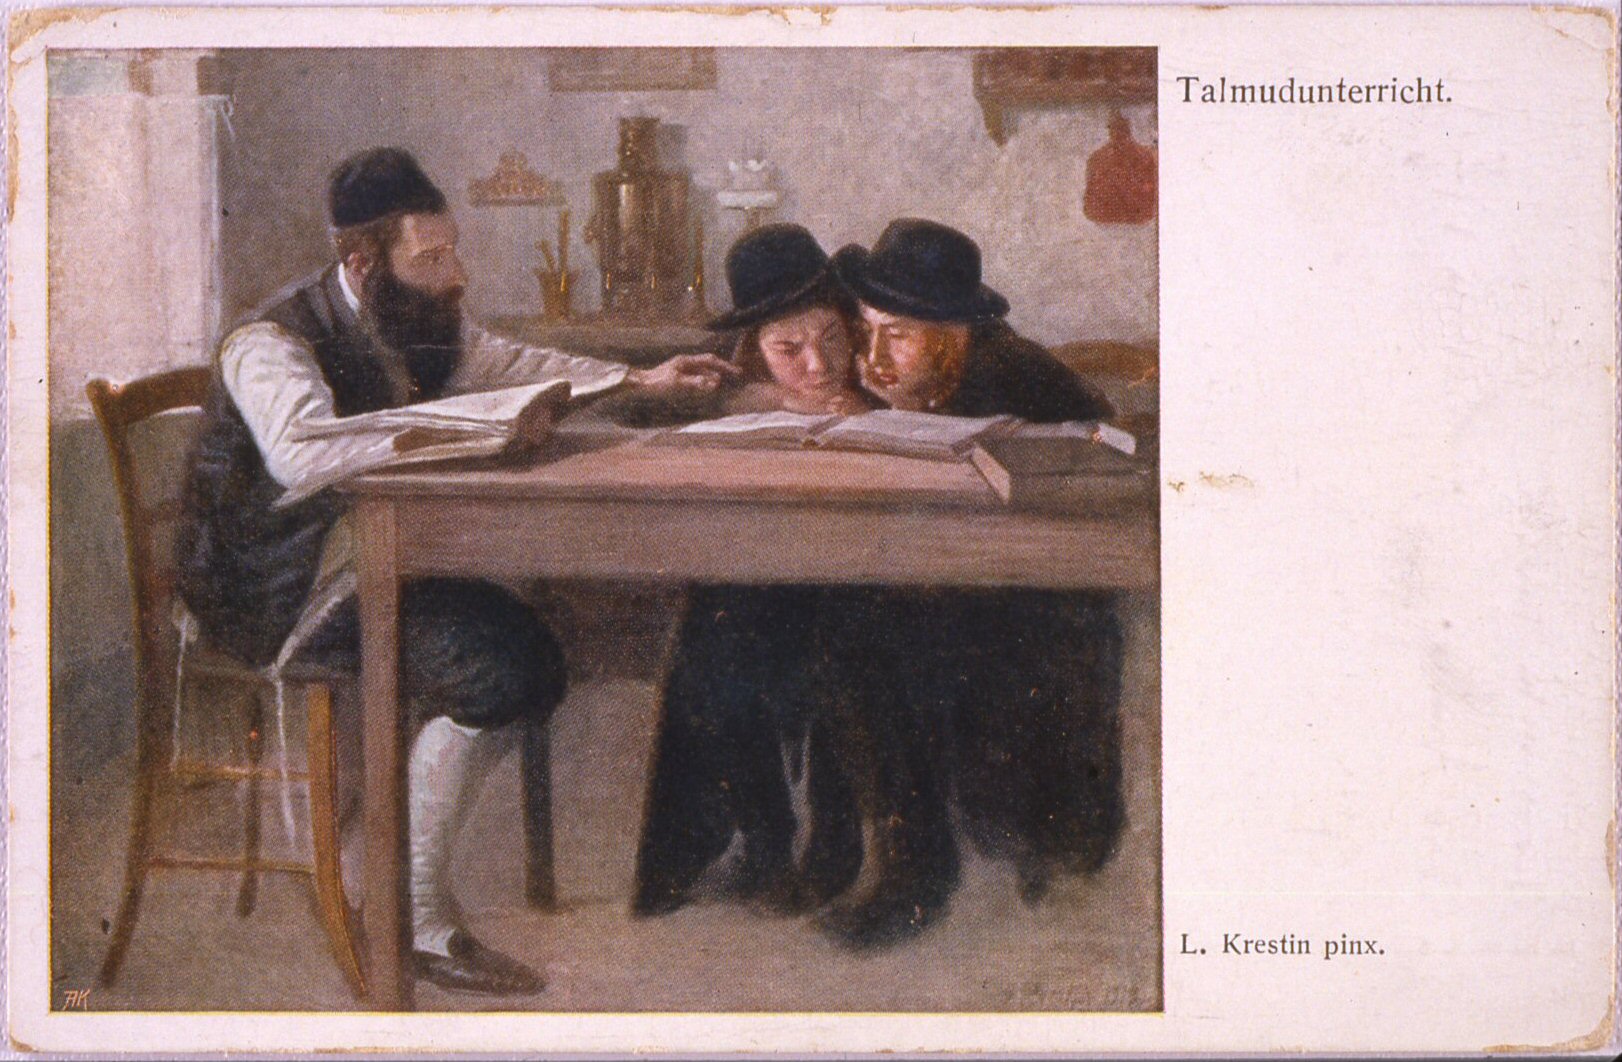 cartolina con soggetto legato alla tradizione degli ebrei polacchi: la lezione di talmud